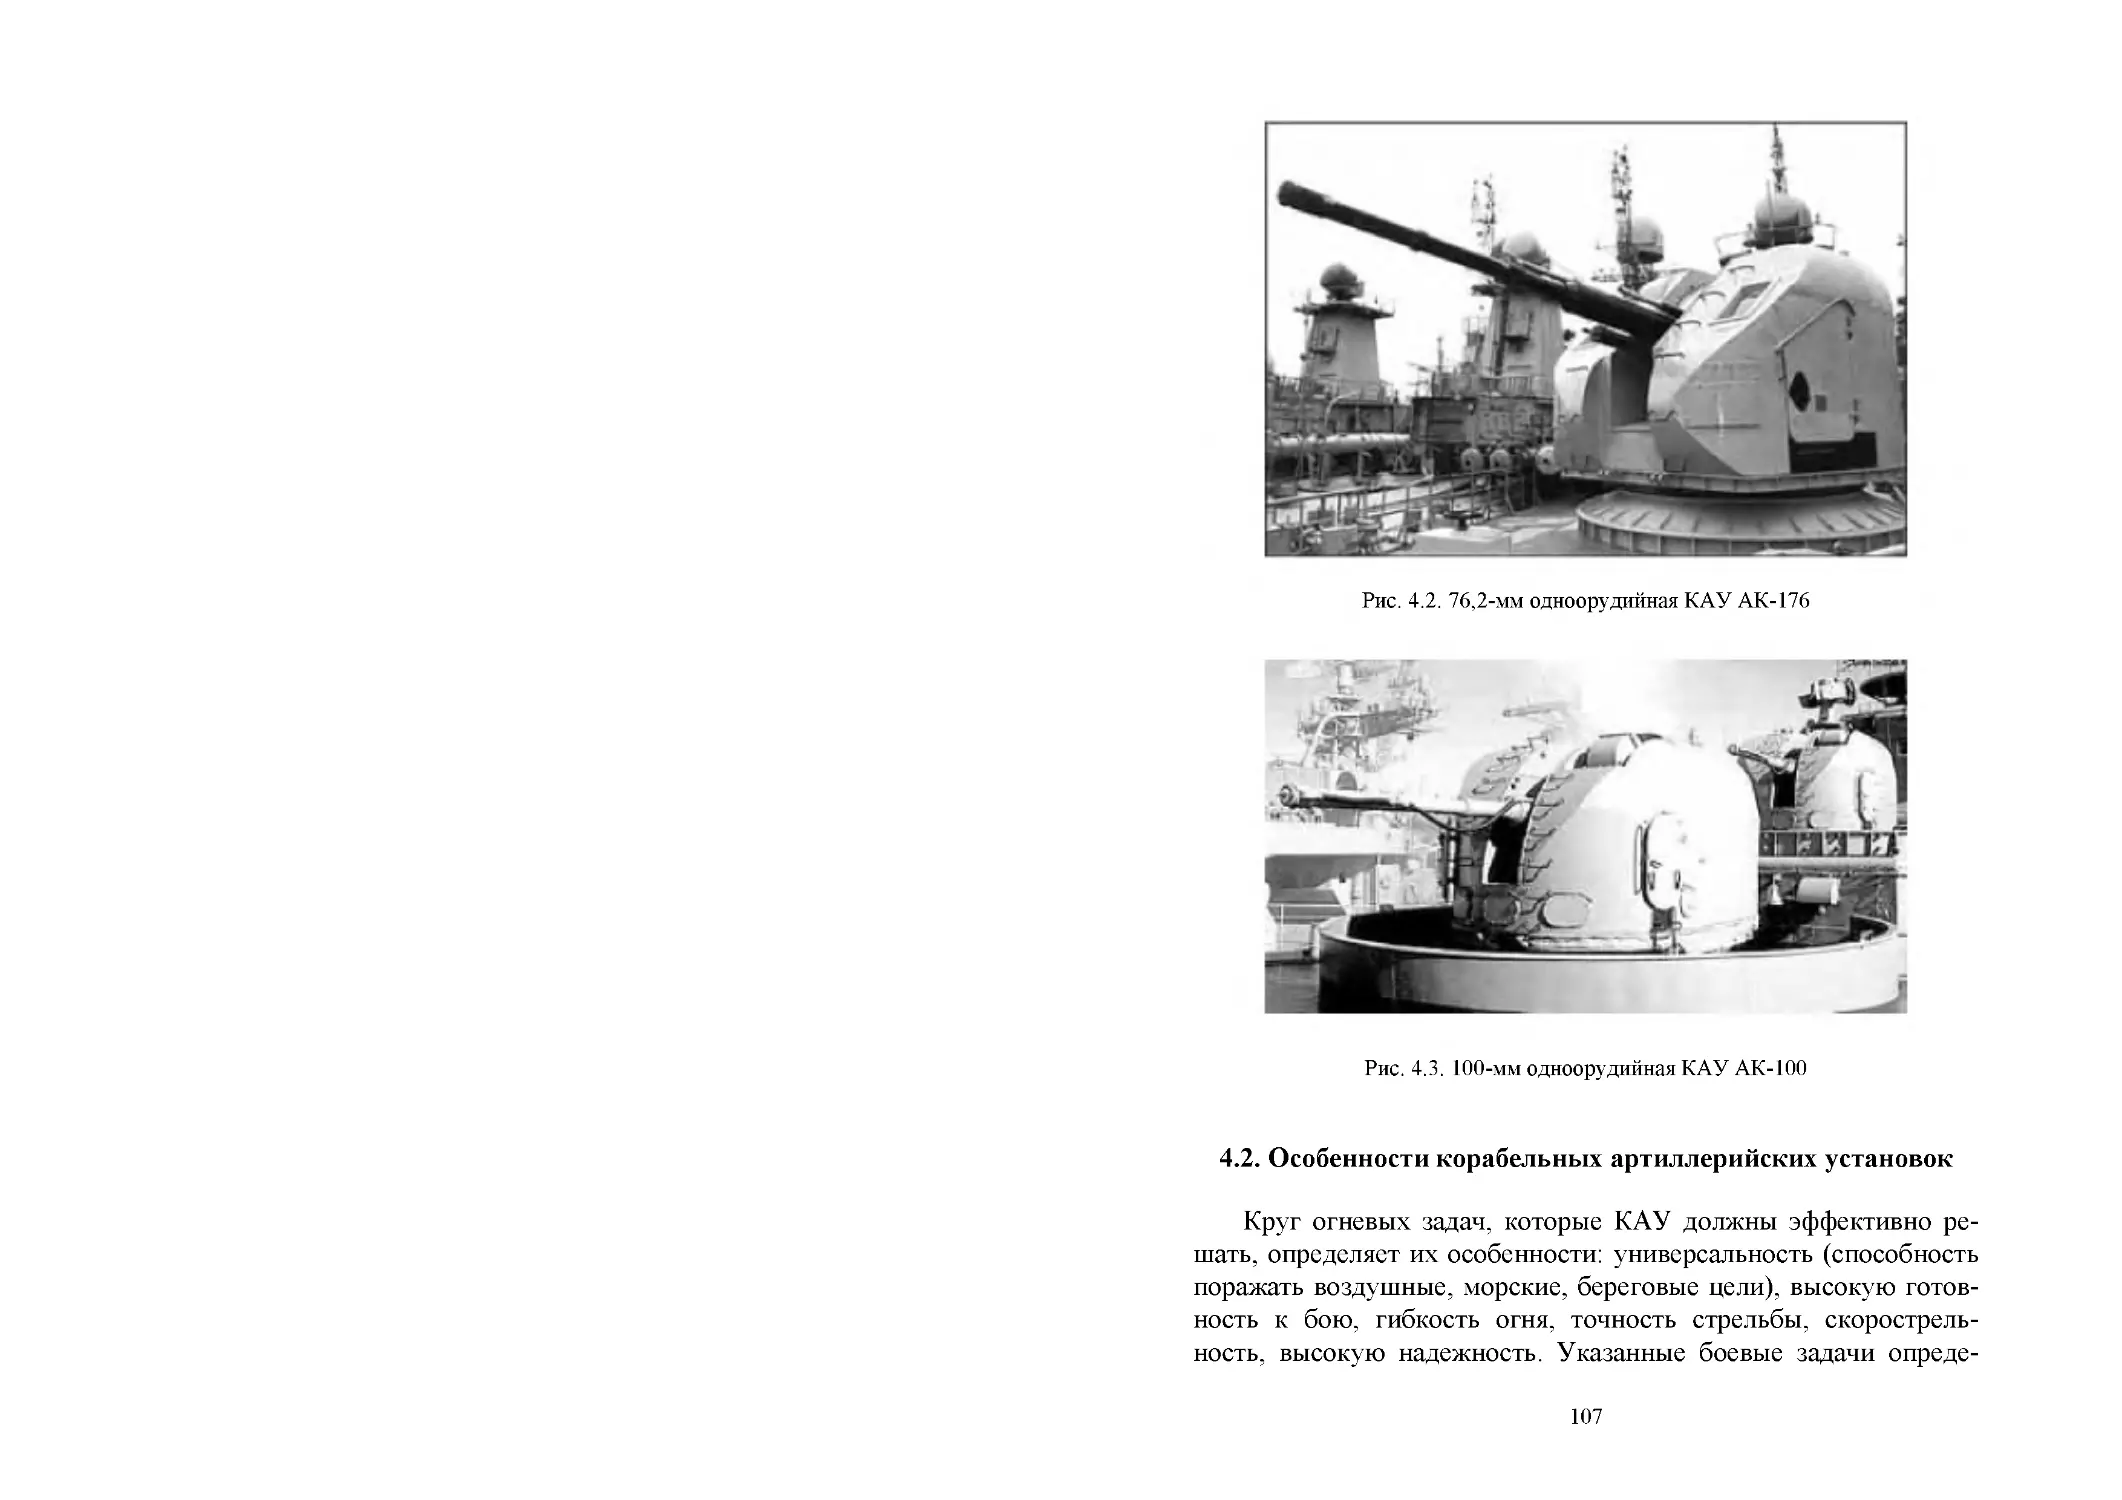 4.2. Особенности корабельных артиллерийских установок